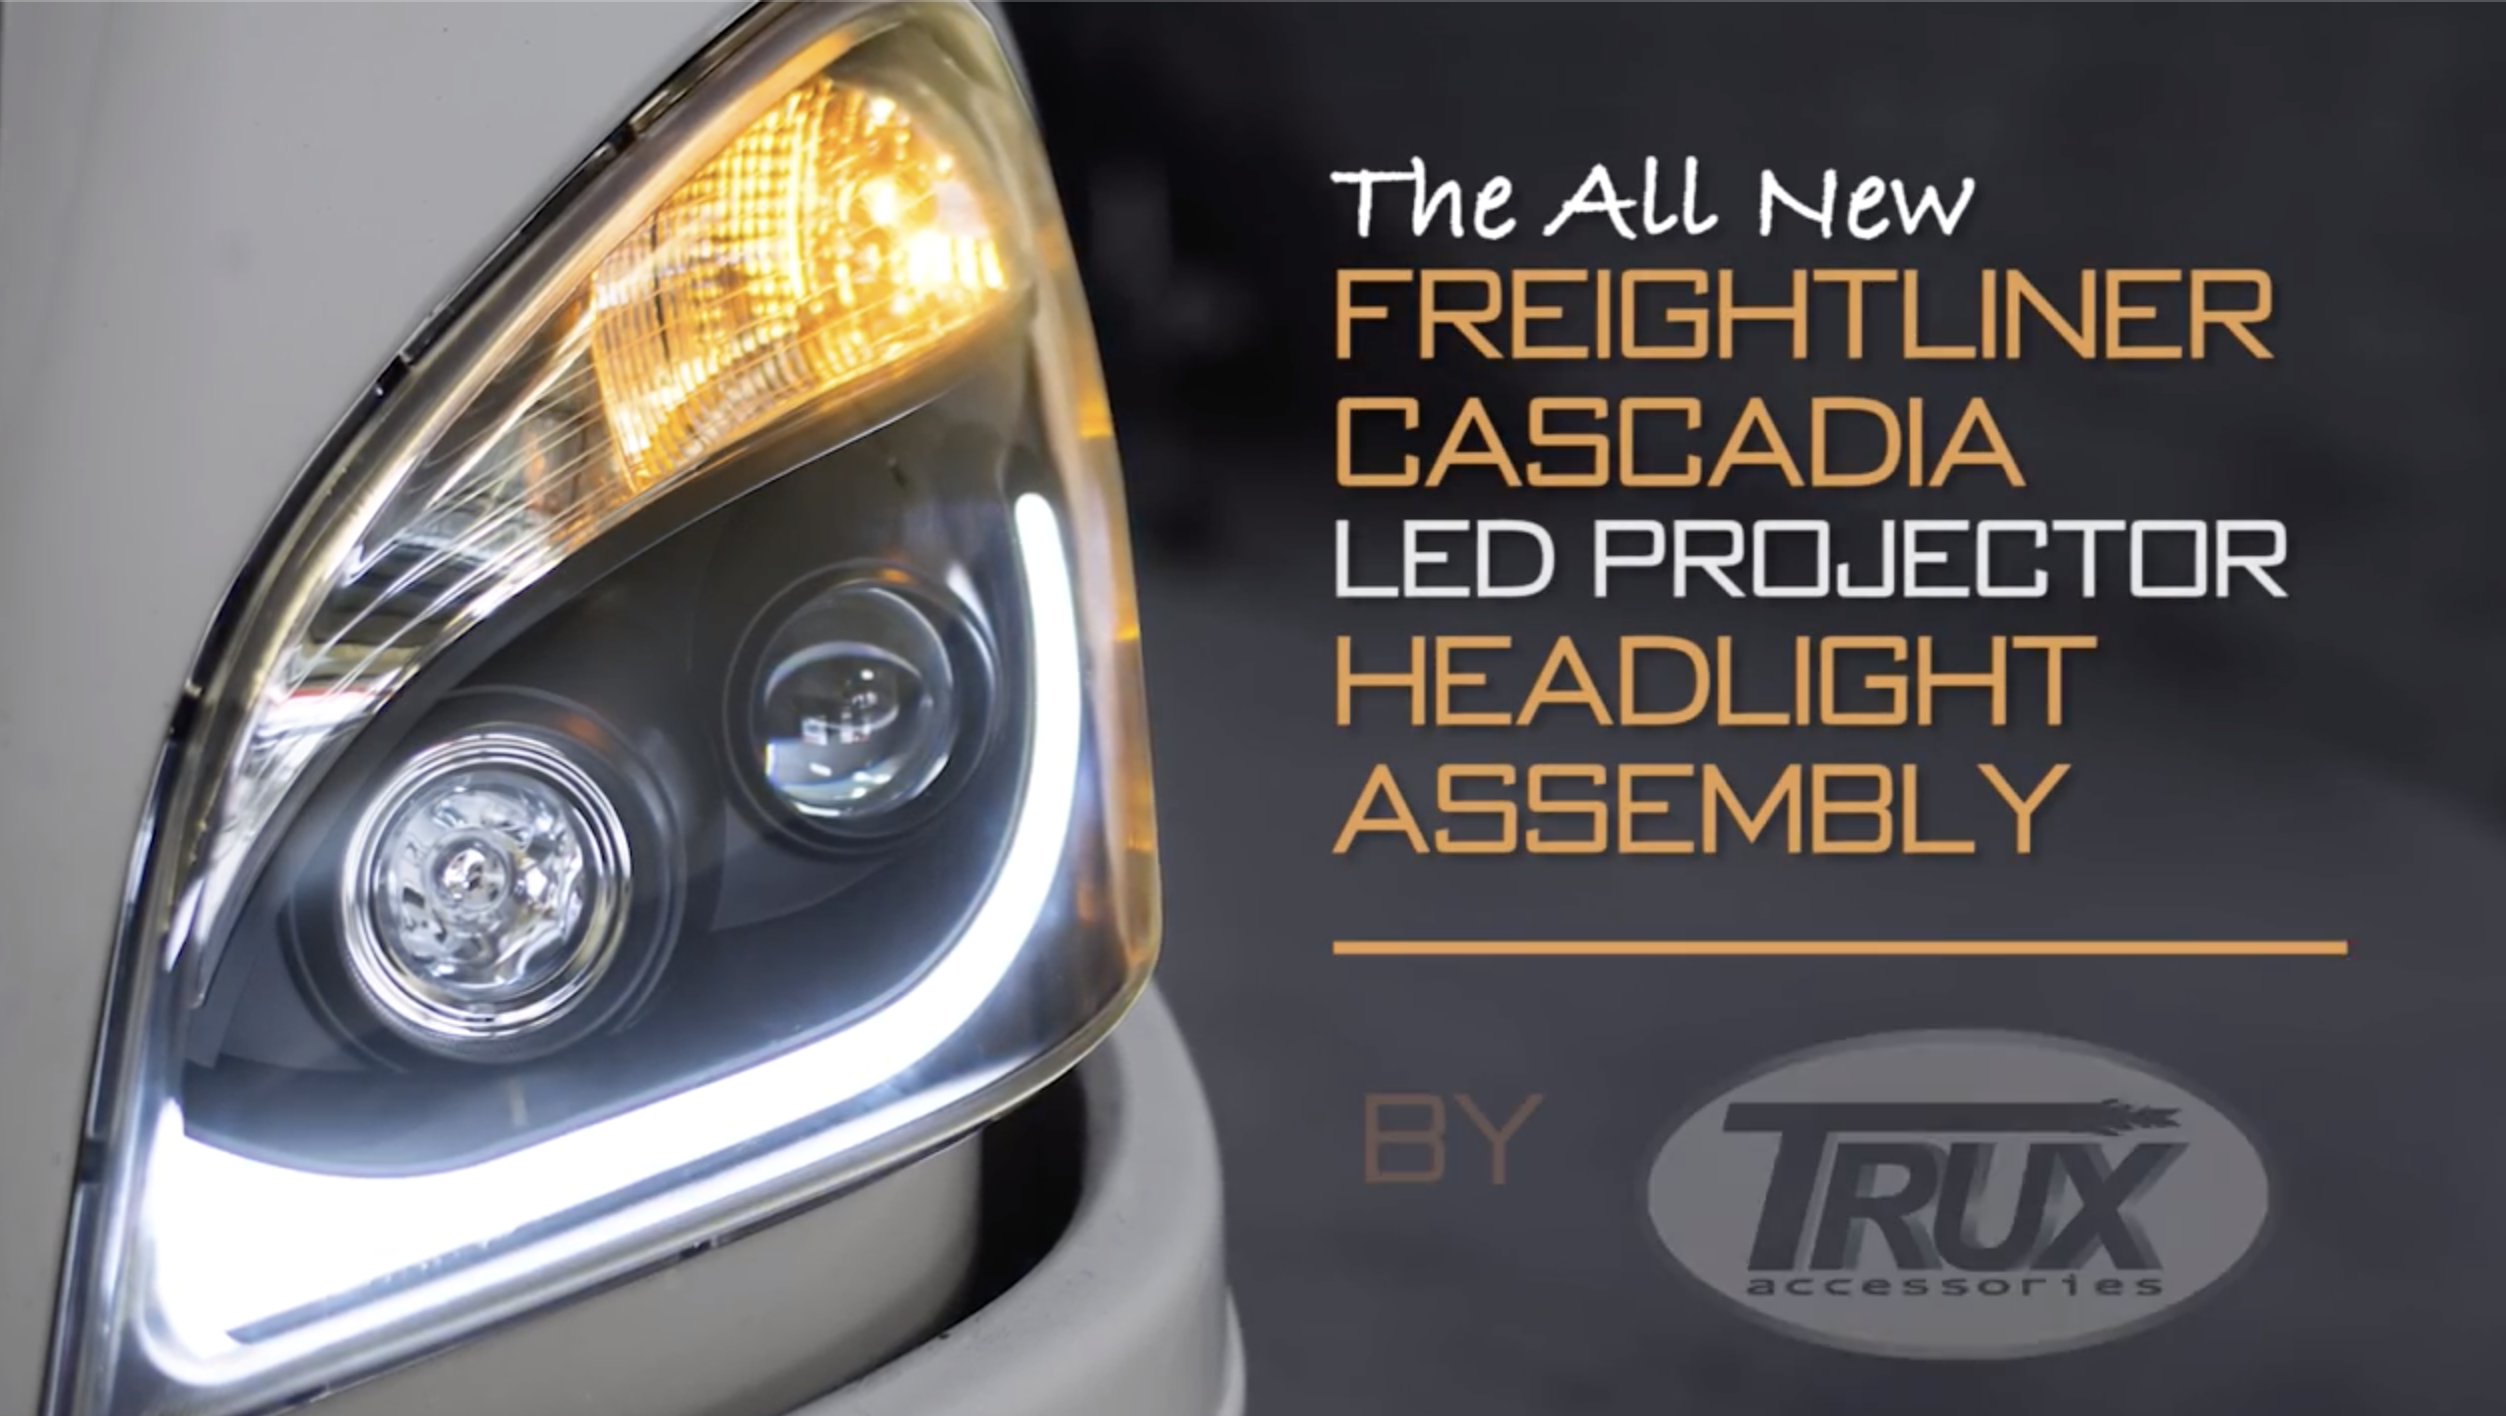 4-Side LED Headlight Bulb for 2008-2018 Freightliner Cascadia Commercial Truck